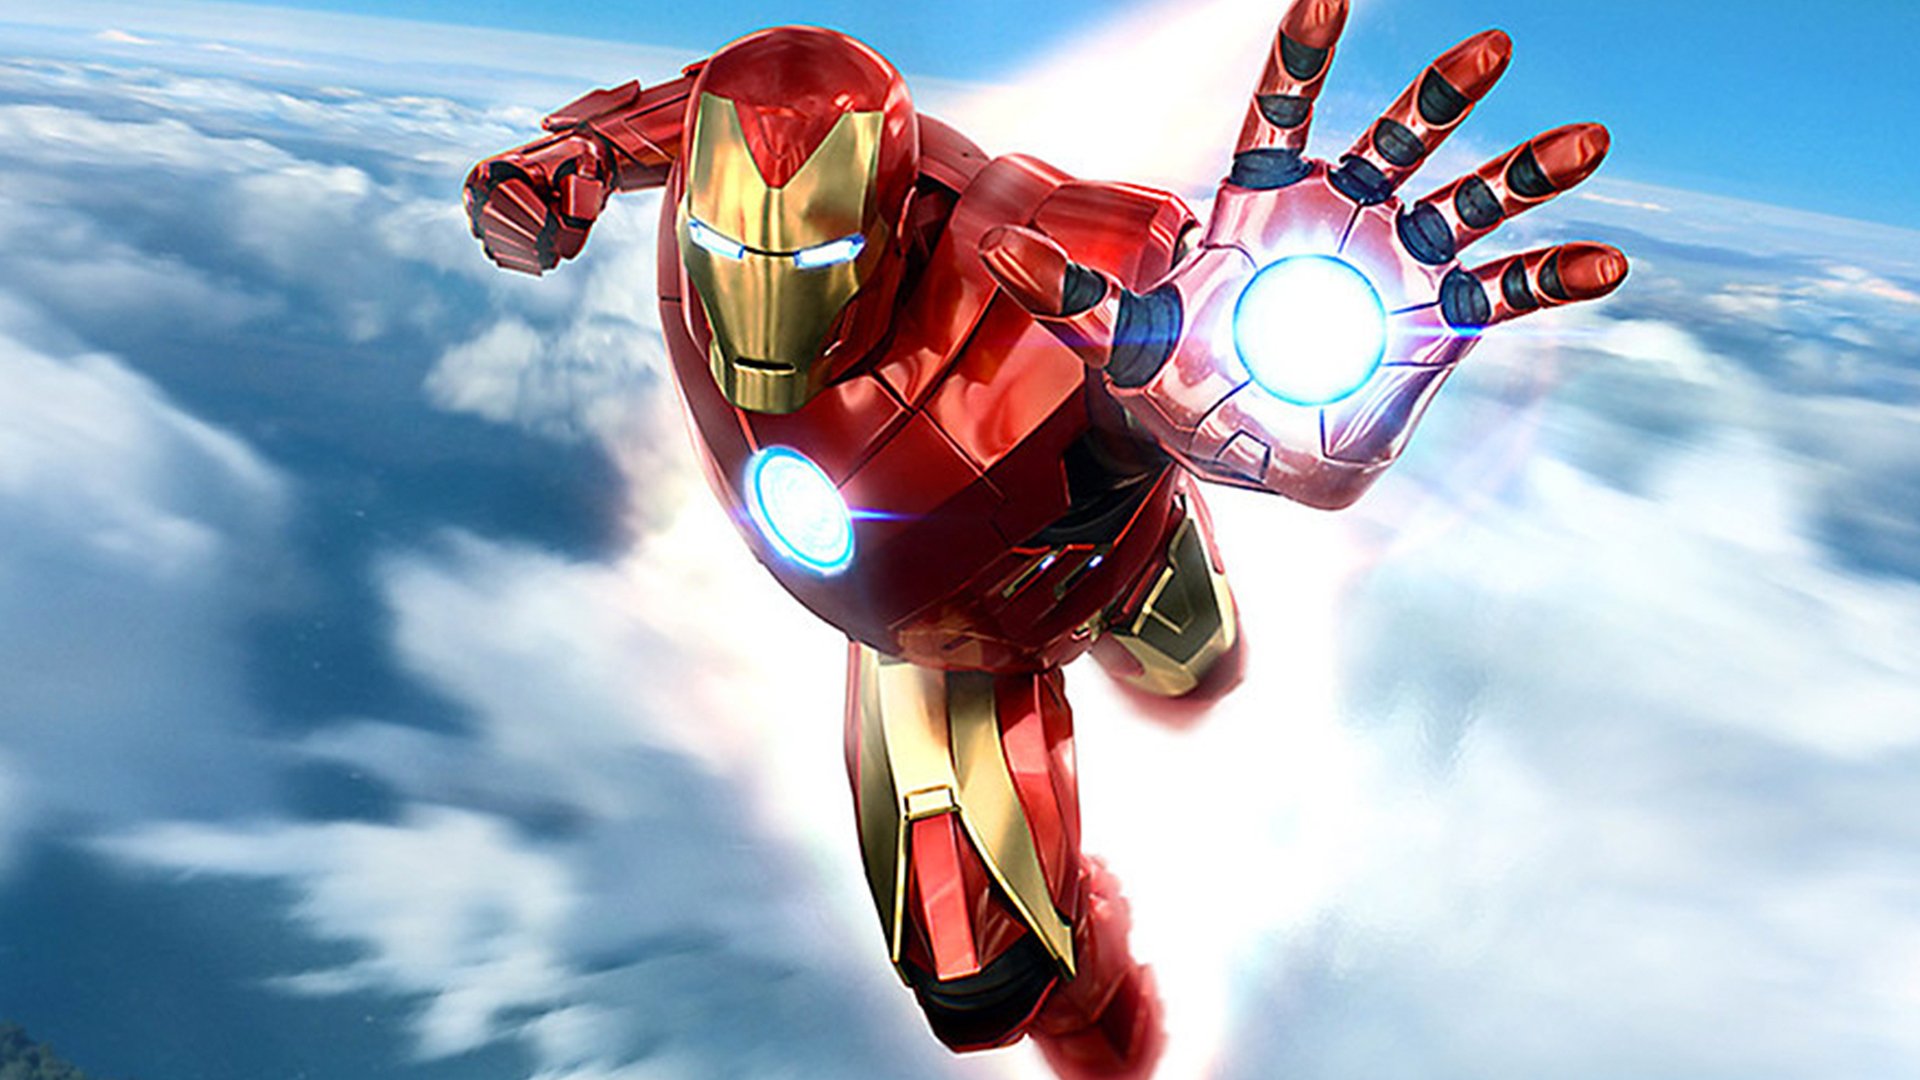 Marvel’s Iron Man VR despega en PlayStation VR: cómo es la gran apuesta de Sony y el estudio Camouflaj